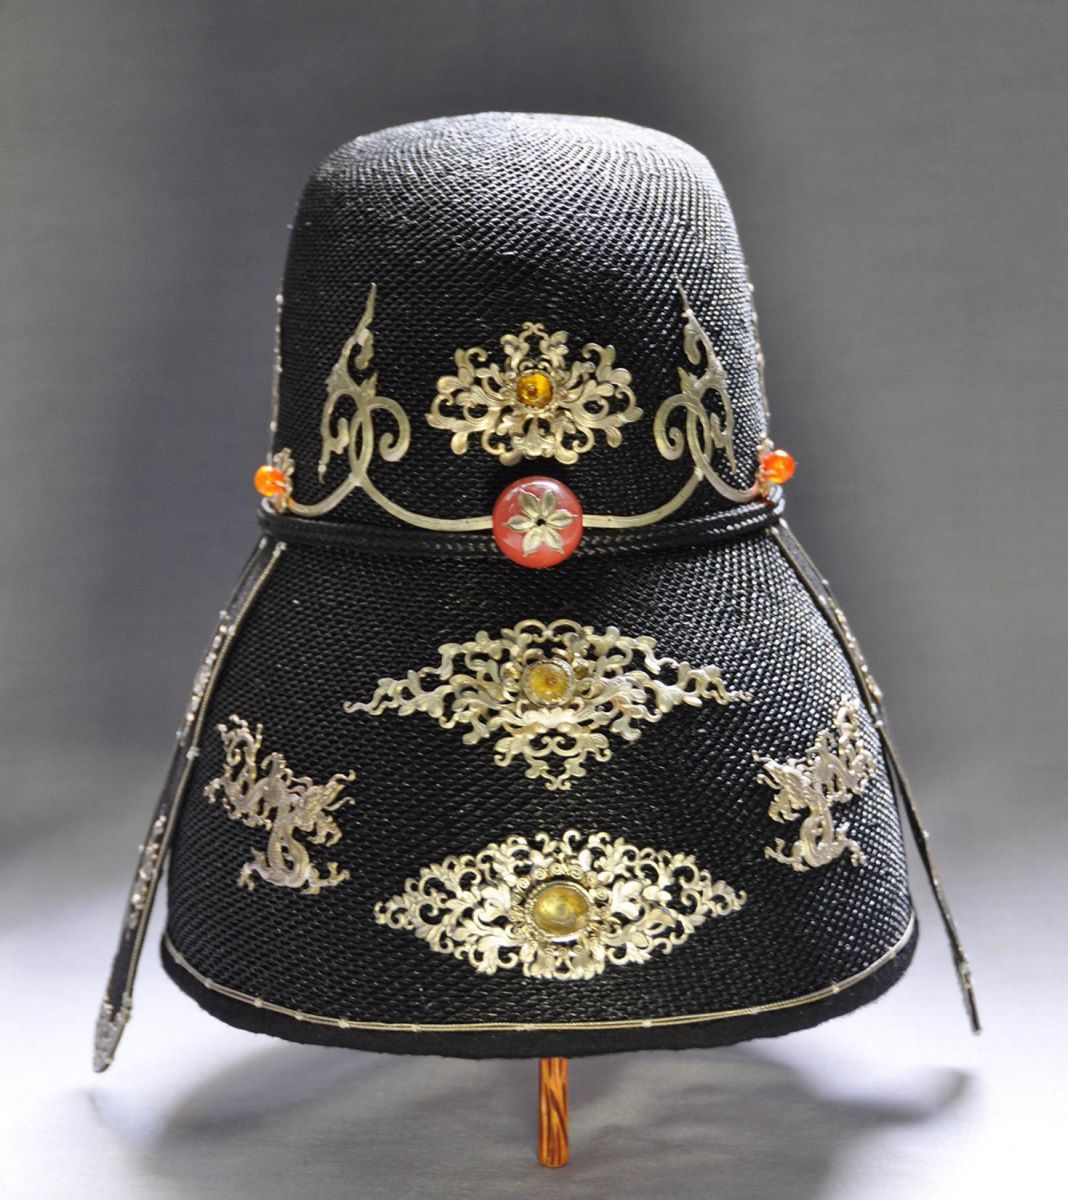 Chiếc mũ Xuân Thu có niên đại được xác định vào thời chúa Nguyễn Phúc Khoát xưng vương  SƯU TẬP CỦA VŨ KIM LỘC